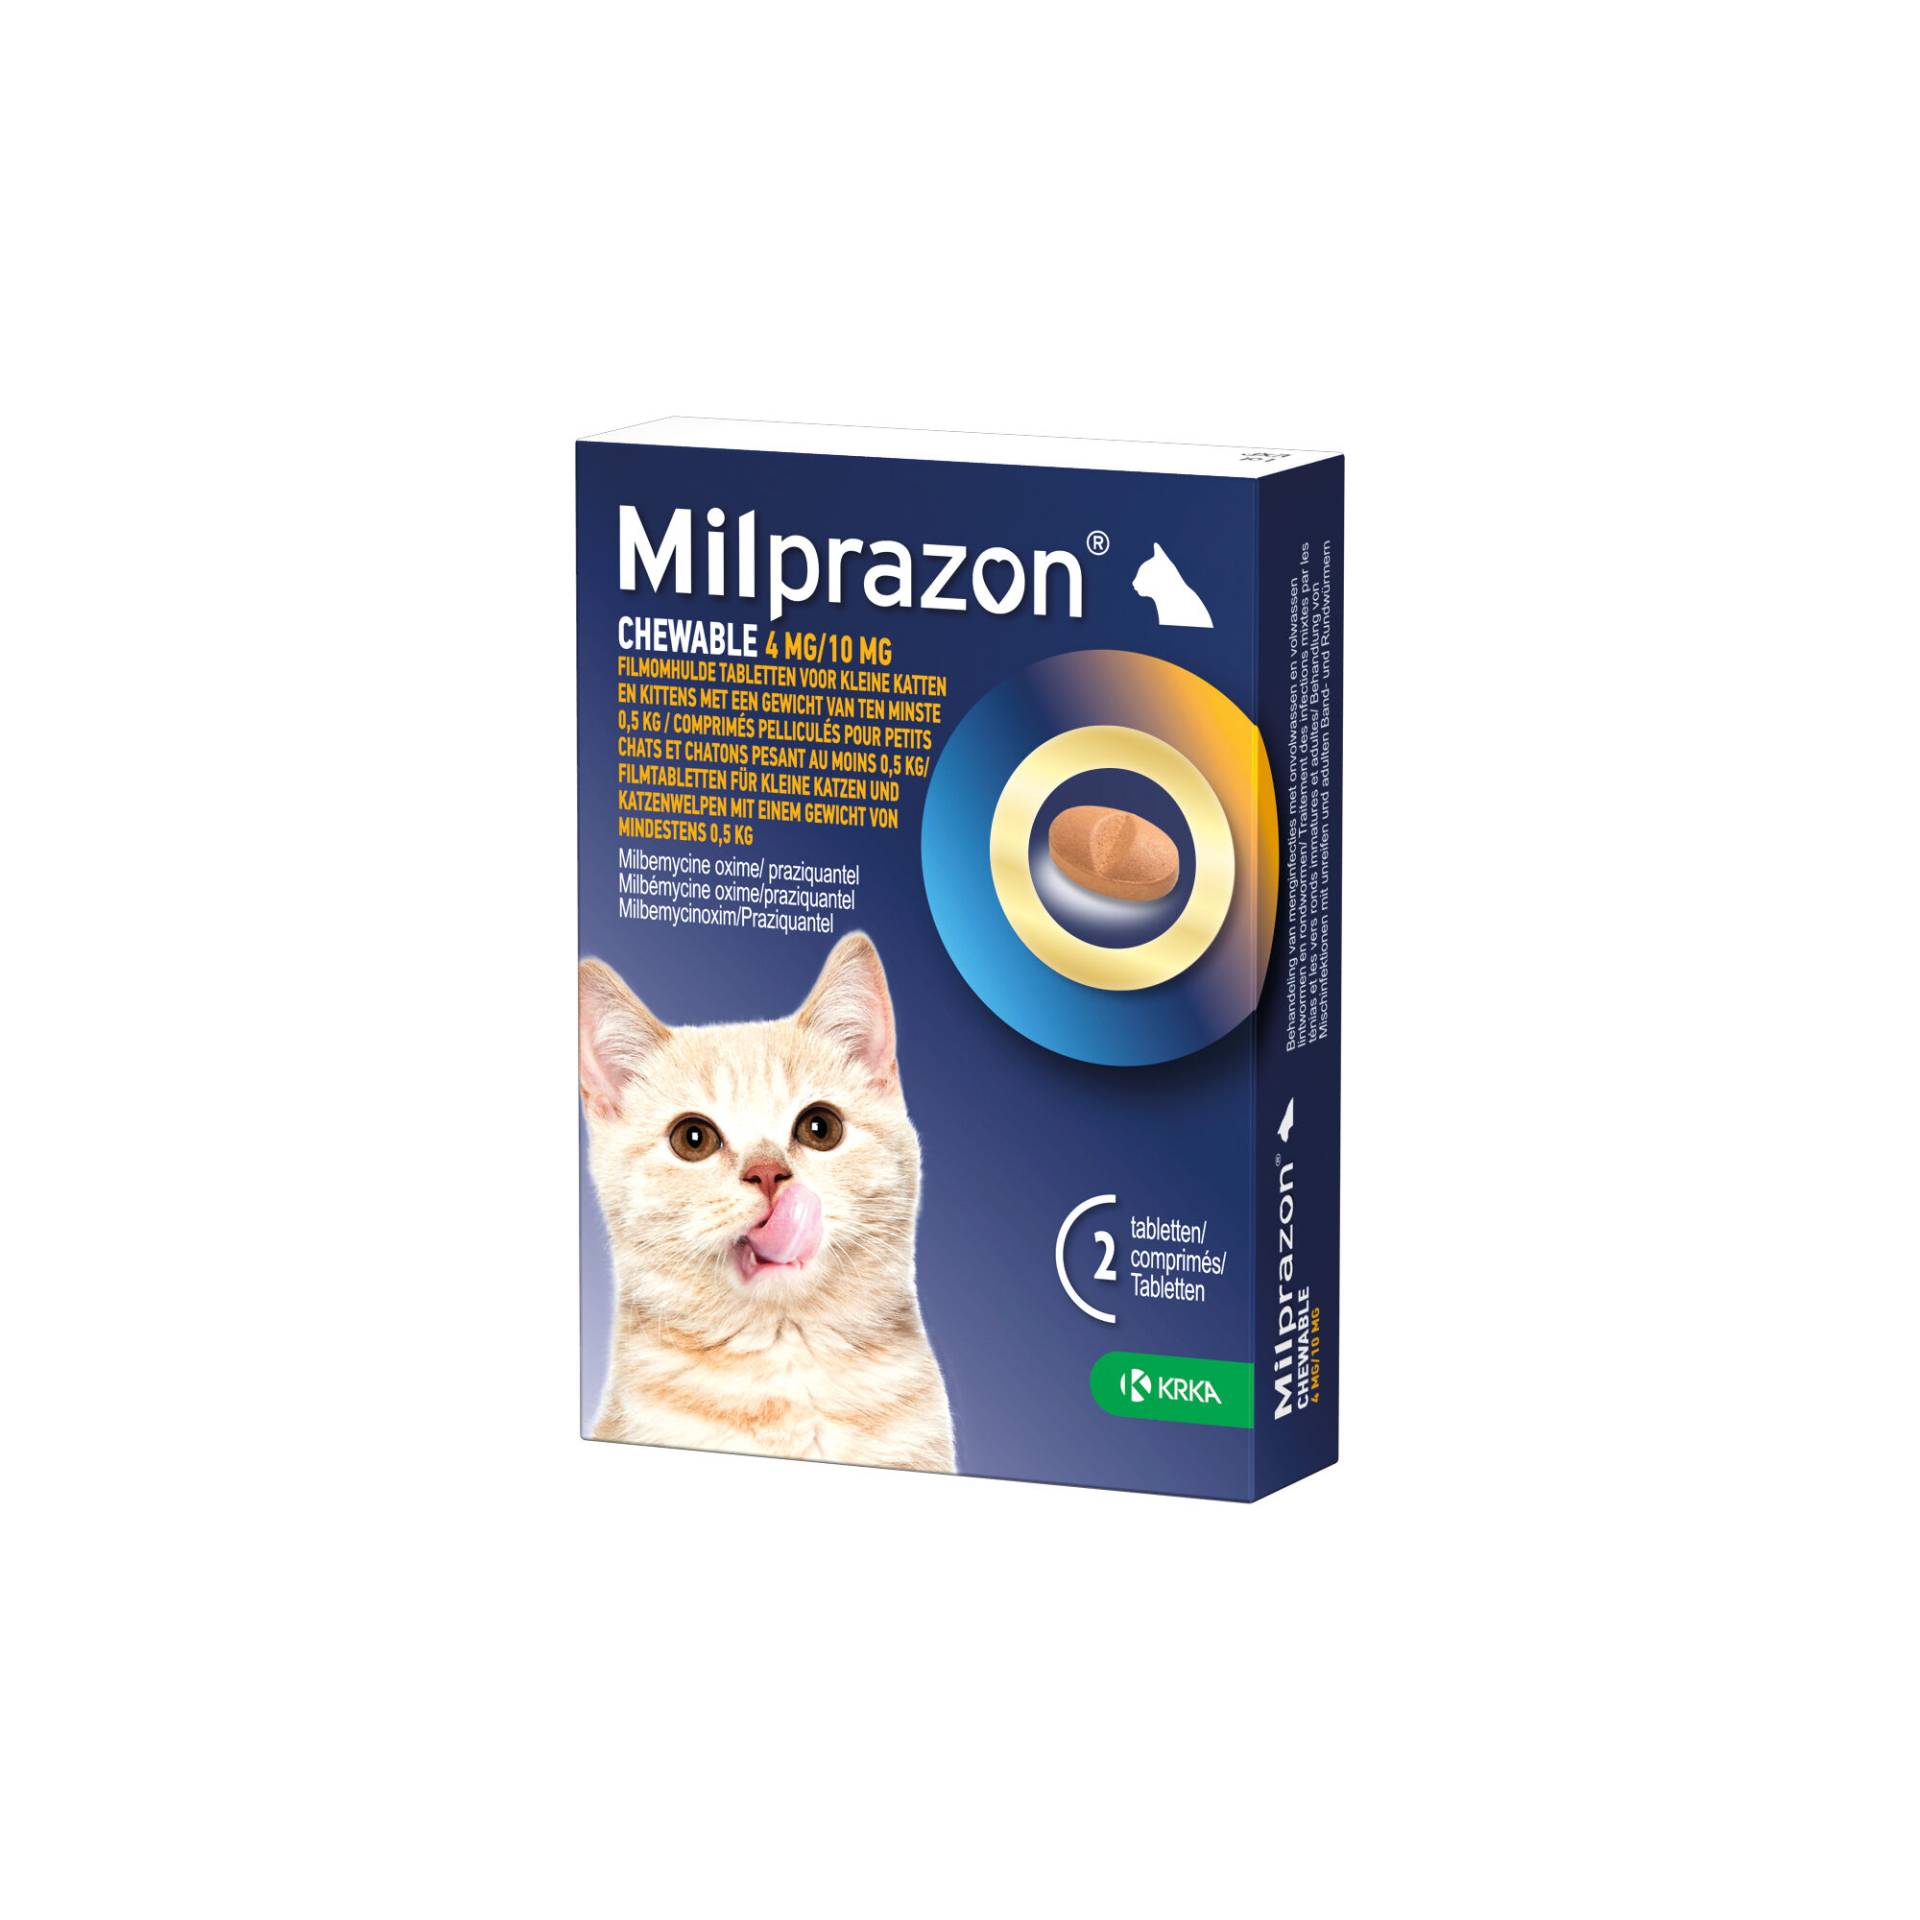 Milprazon Chewable 4 mg/10 mg - kleine Katze - 4 Tabletten von Milprazon